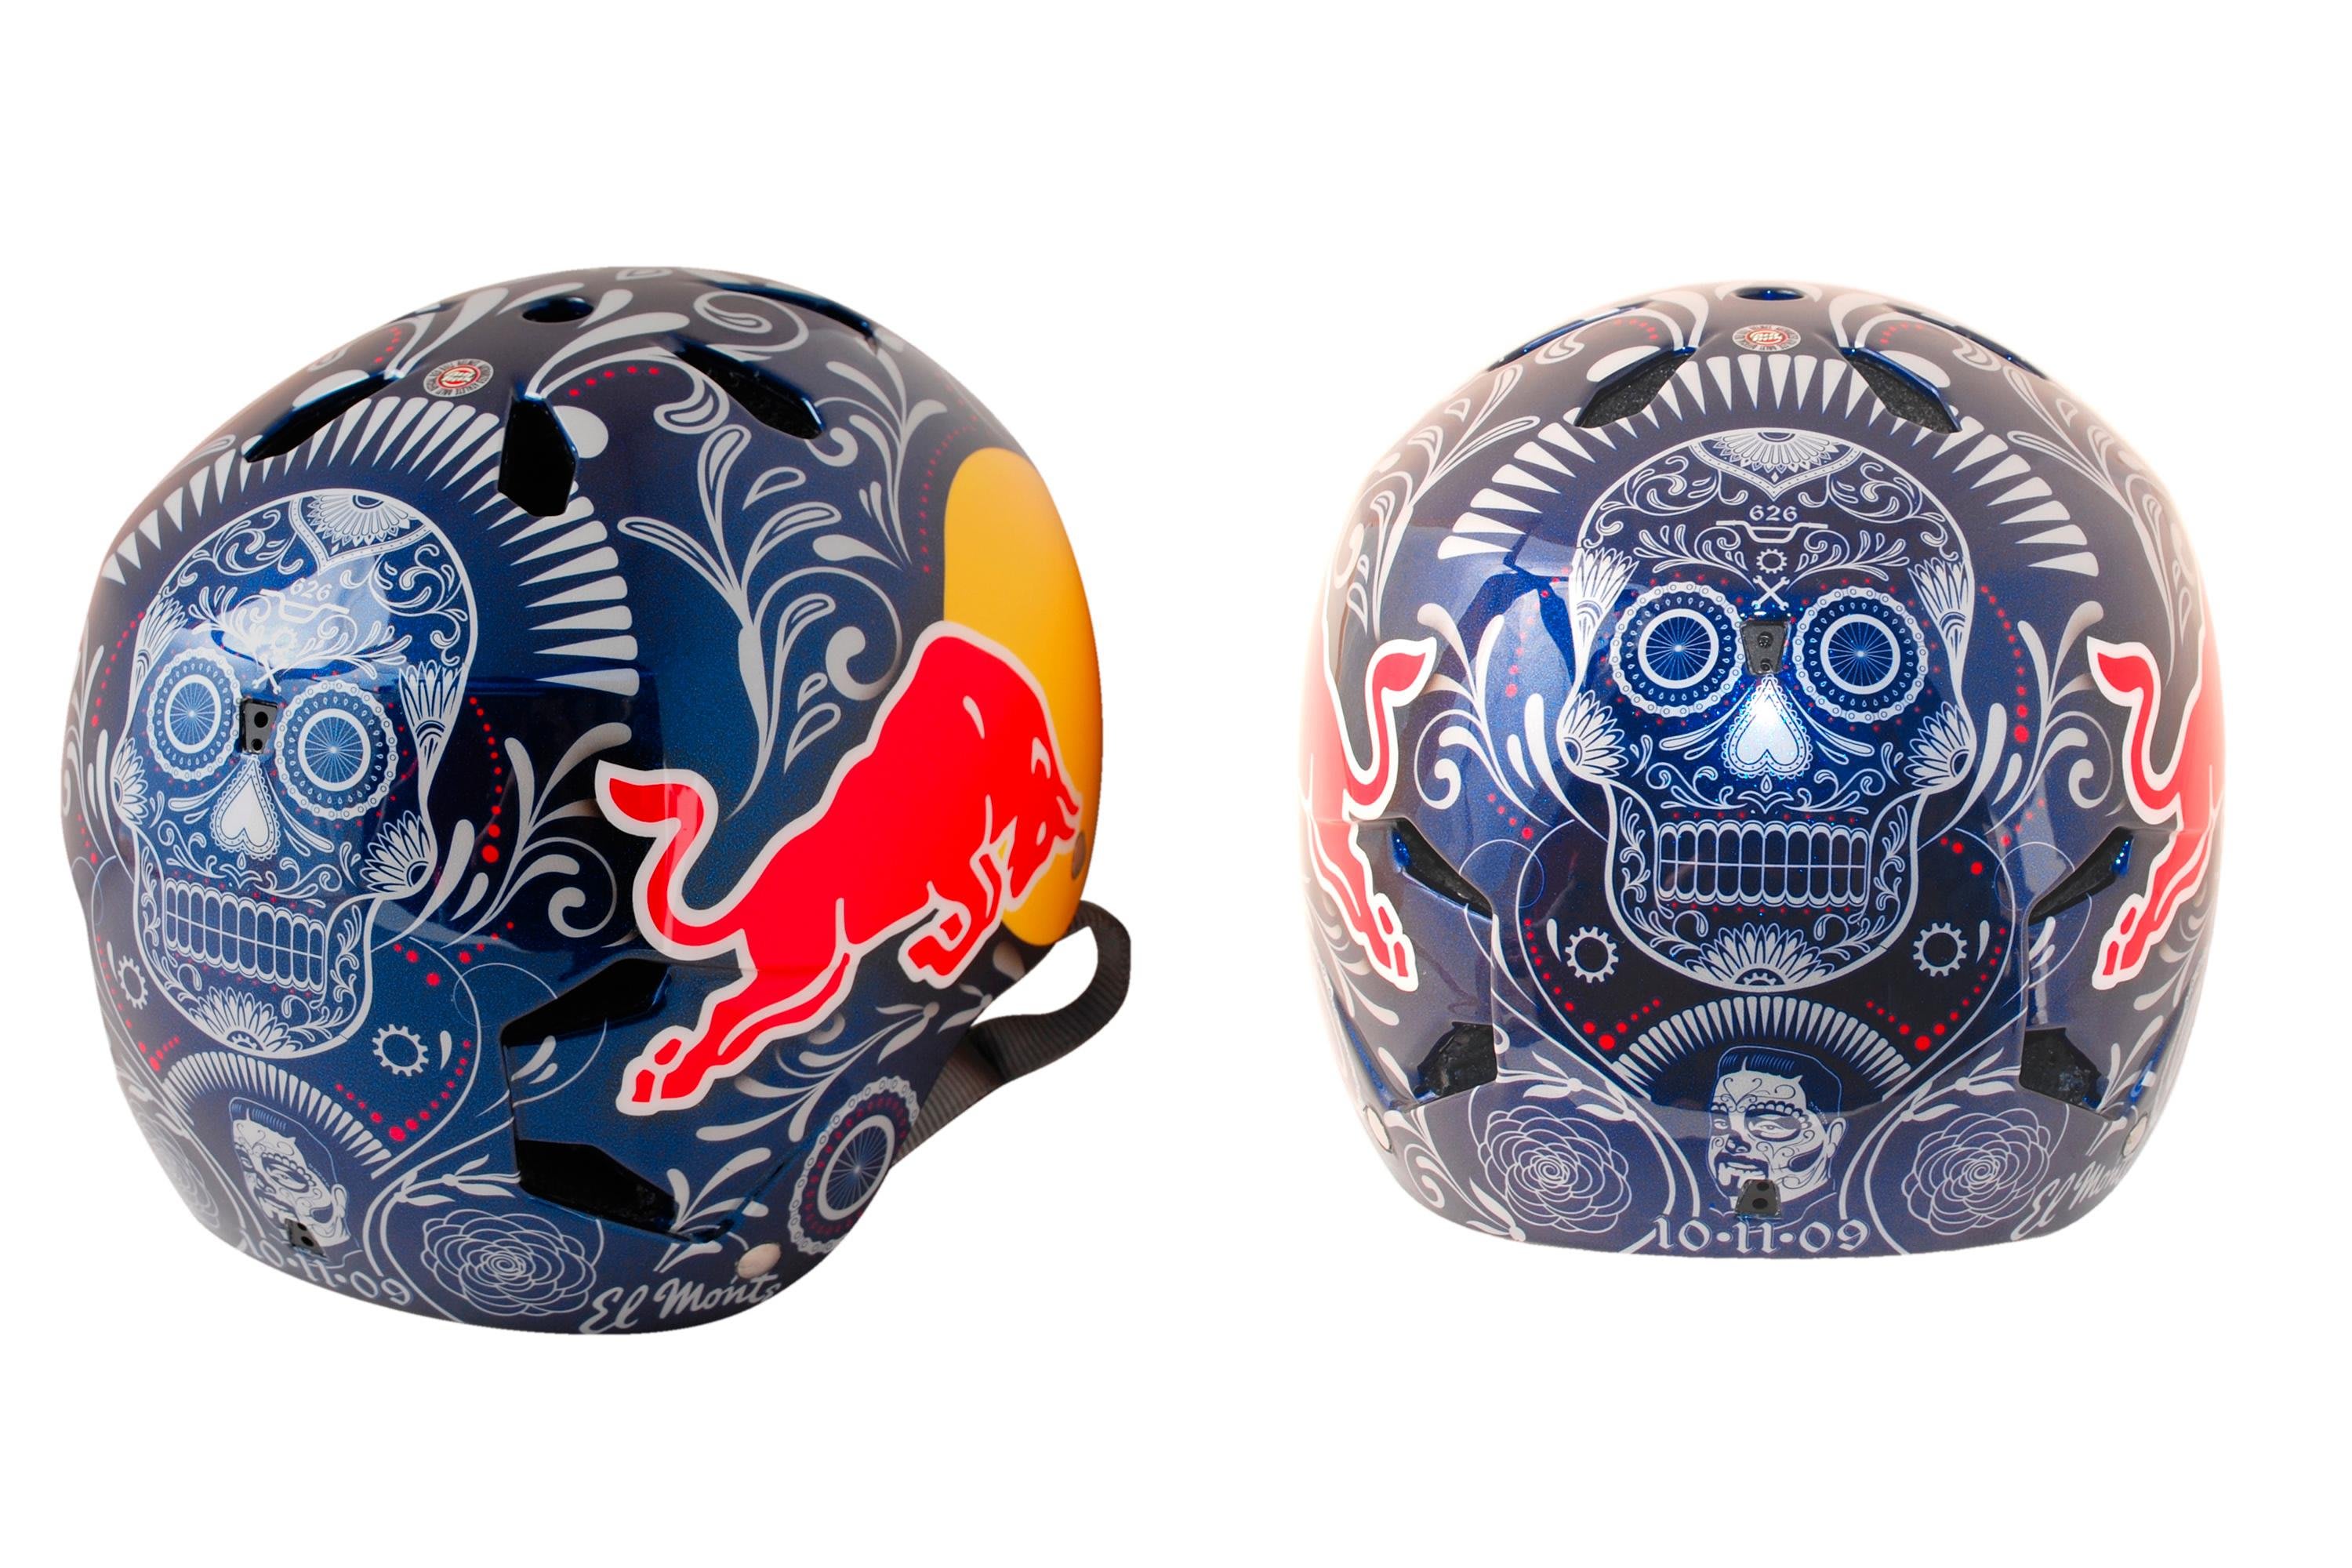 6 de bicicleta | Red Bull Helmets